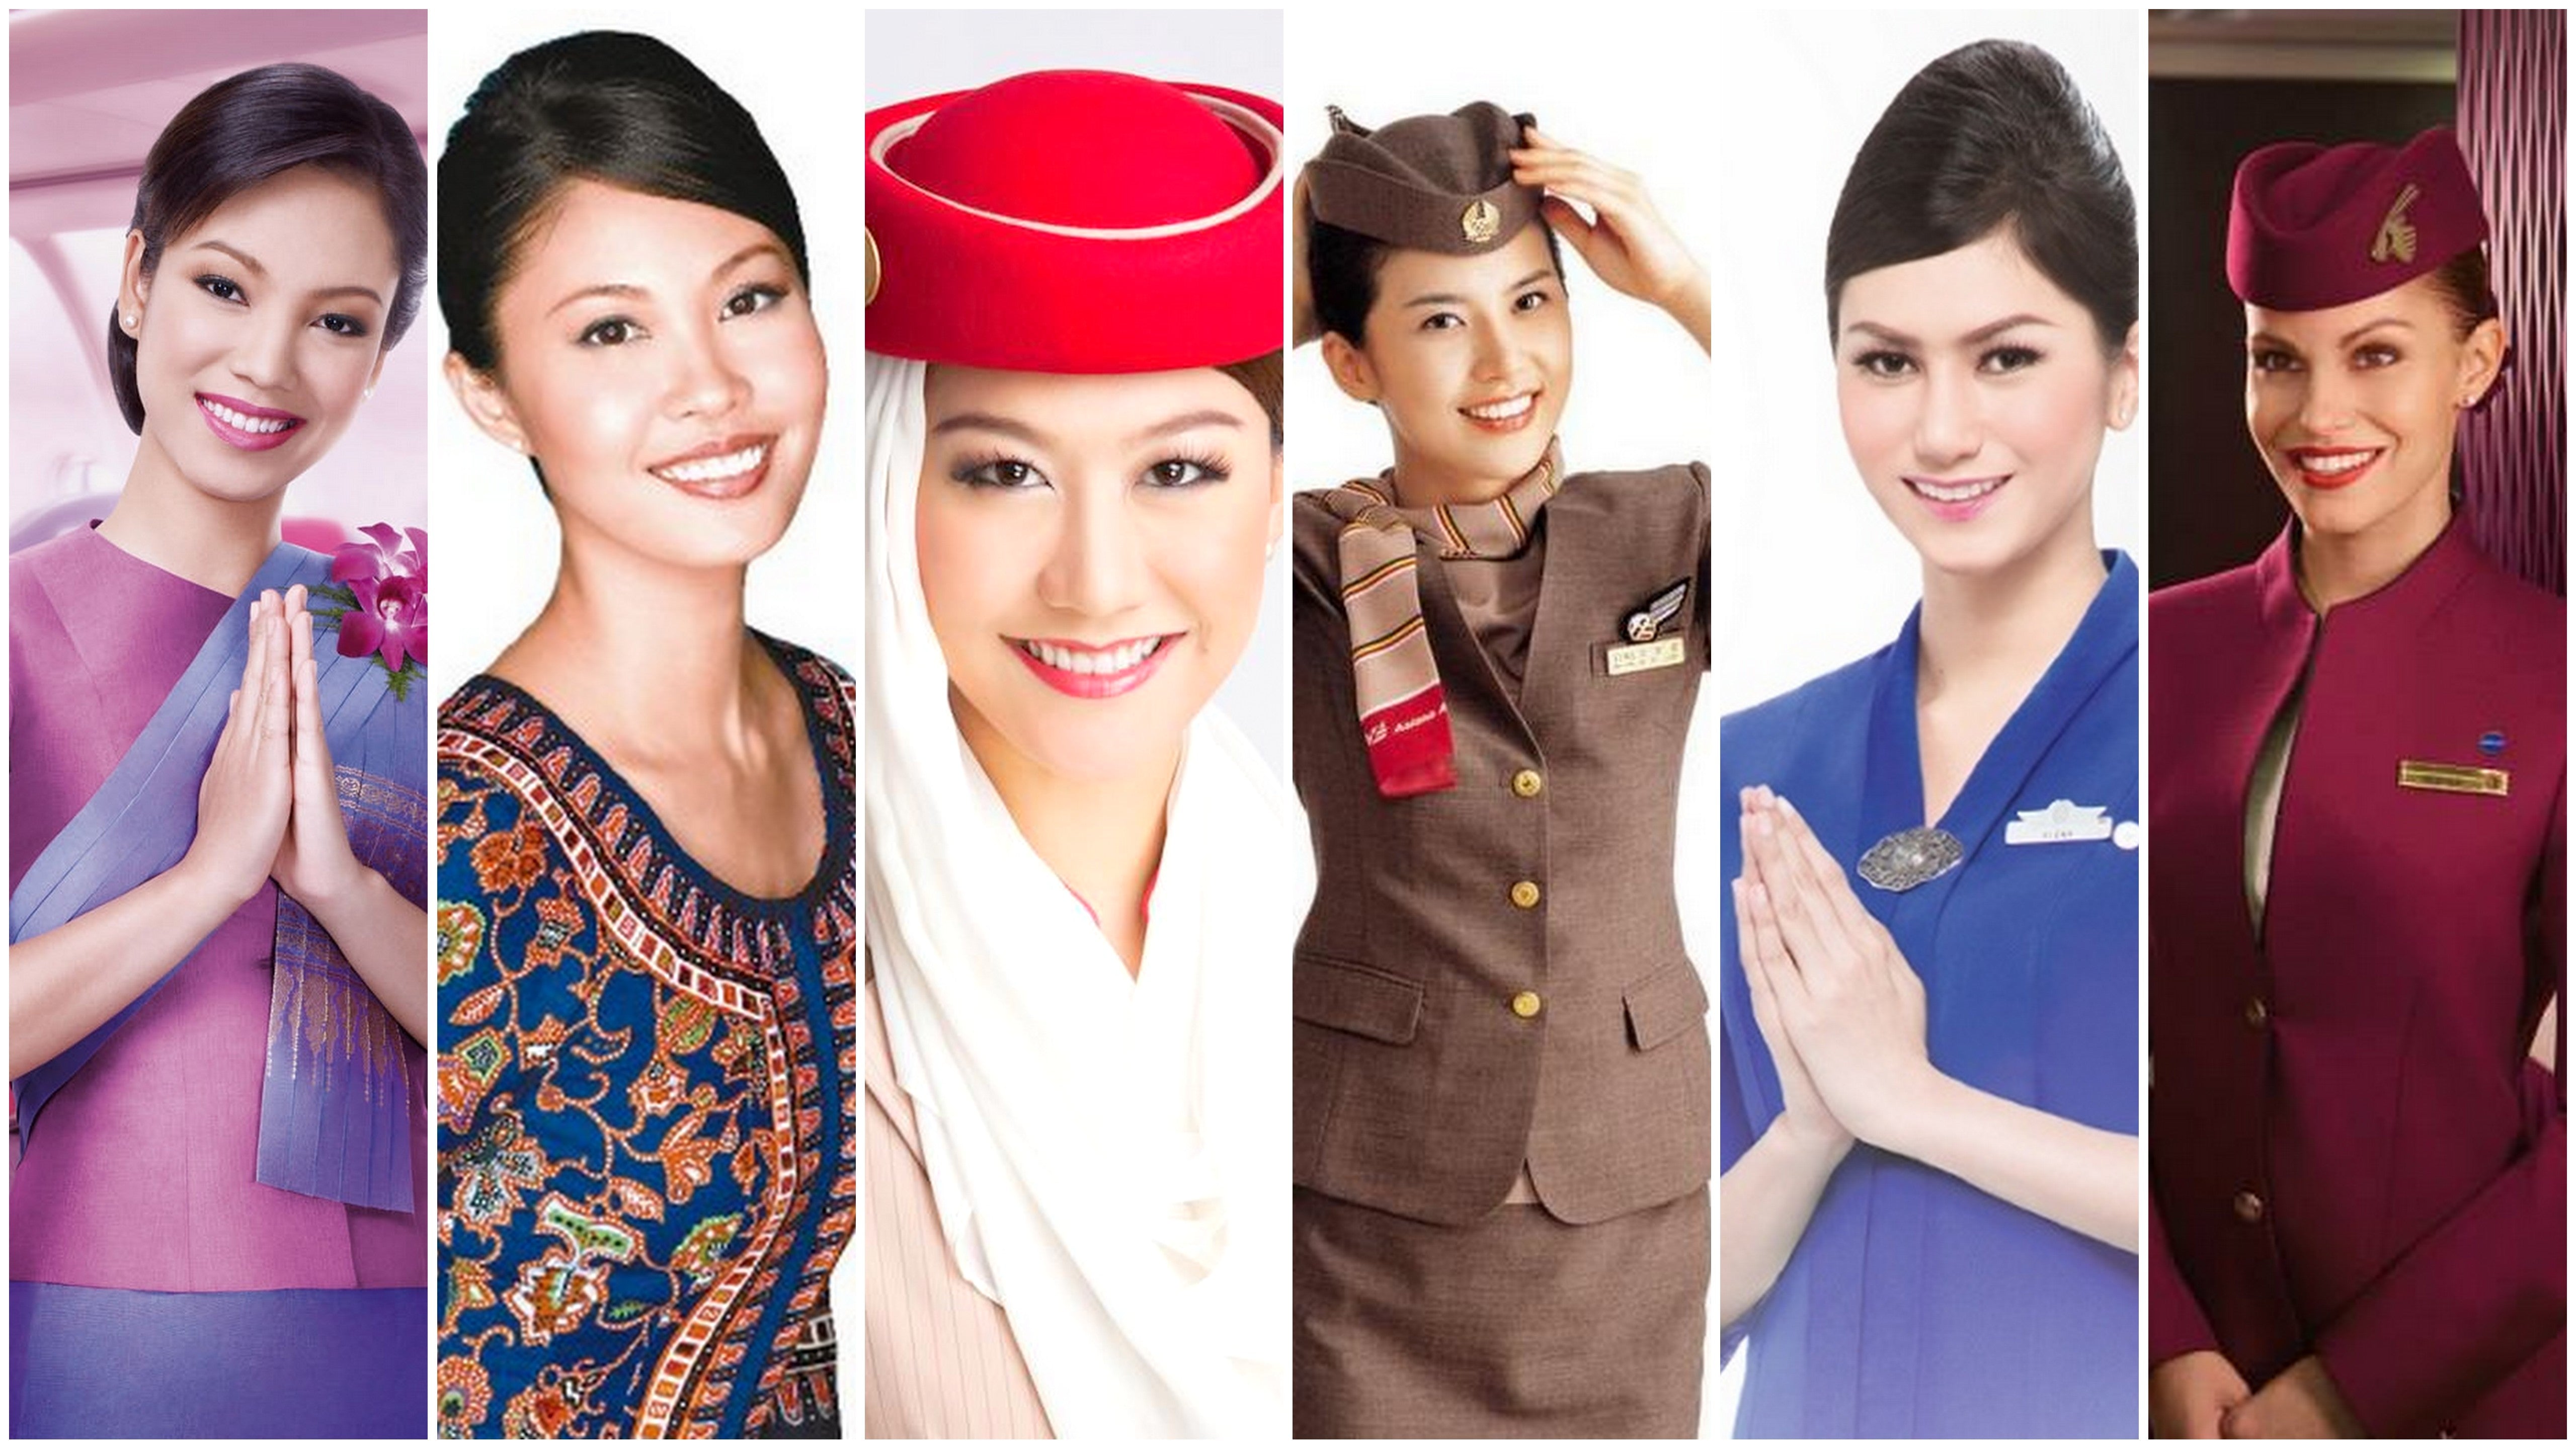 Japan air hostess